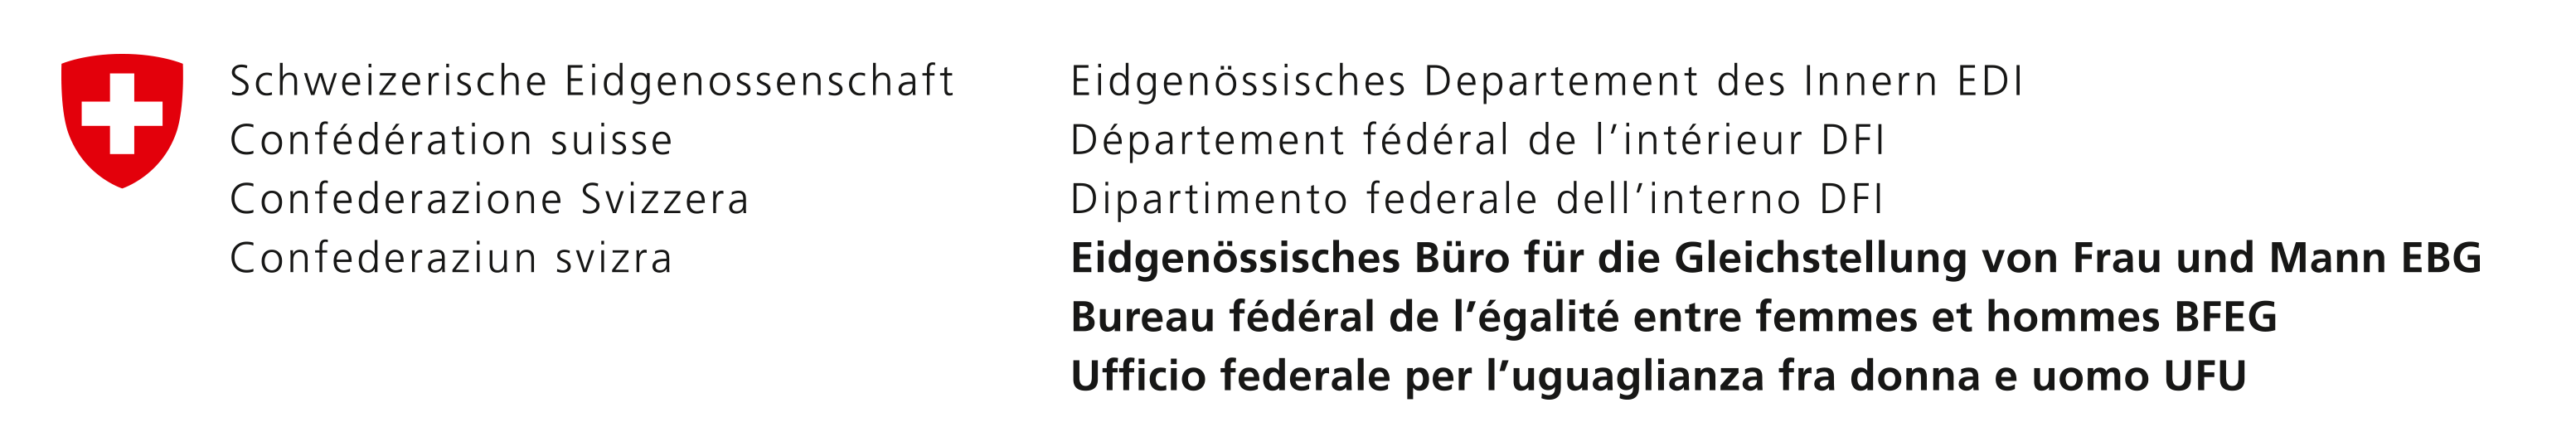 Logo - Bureau fédéral de l'égalité entre femmes et hommes (BFEG)